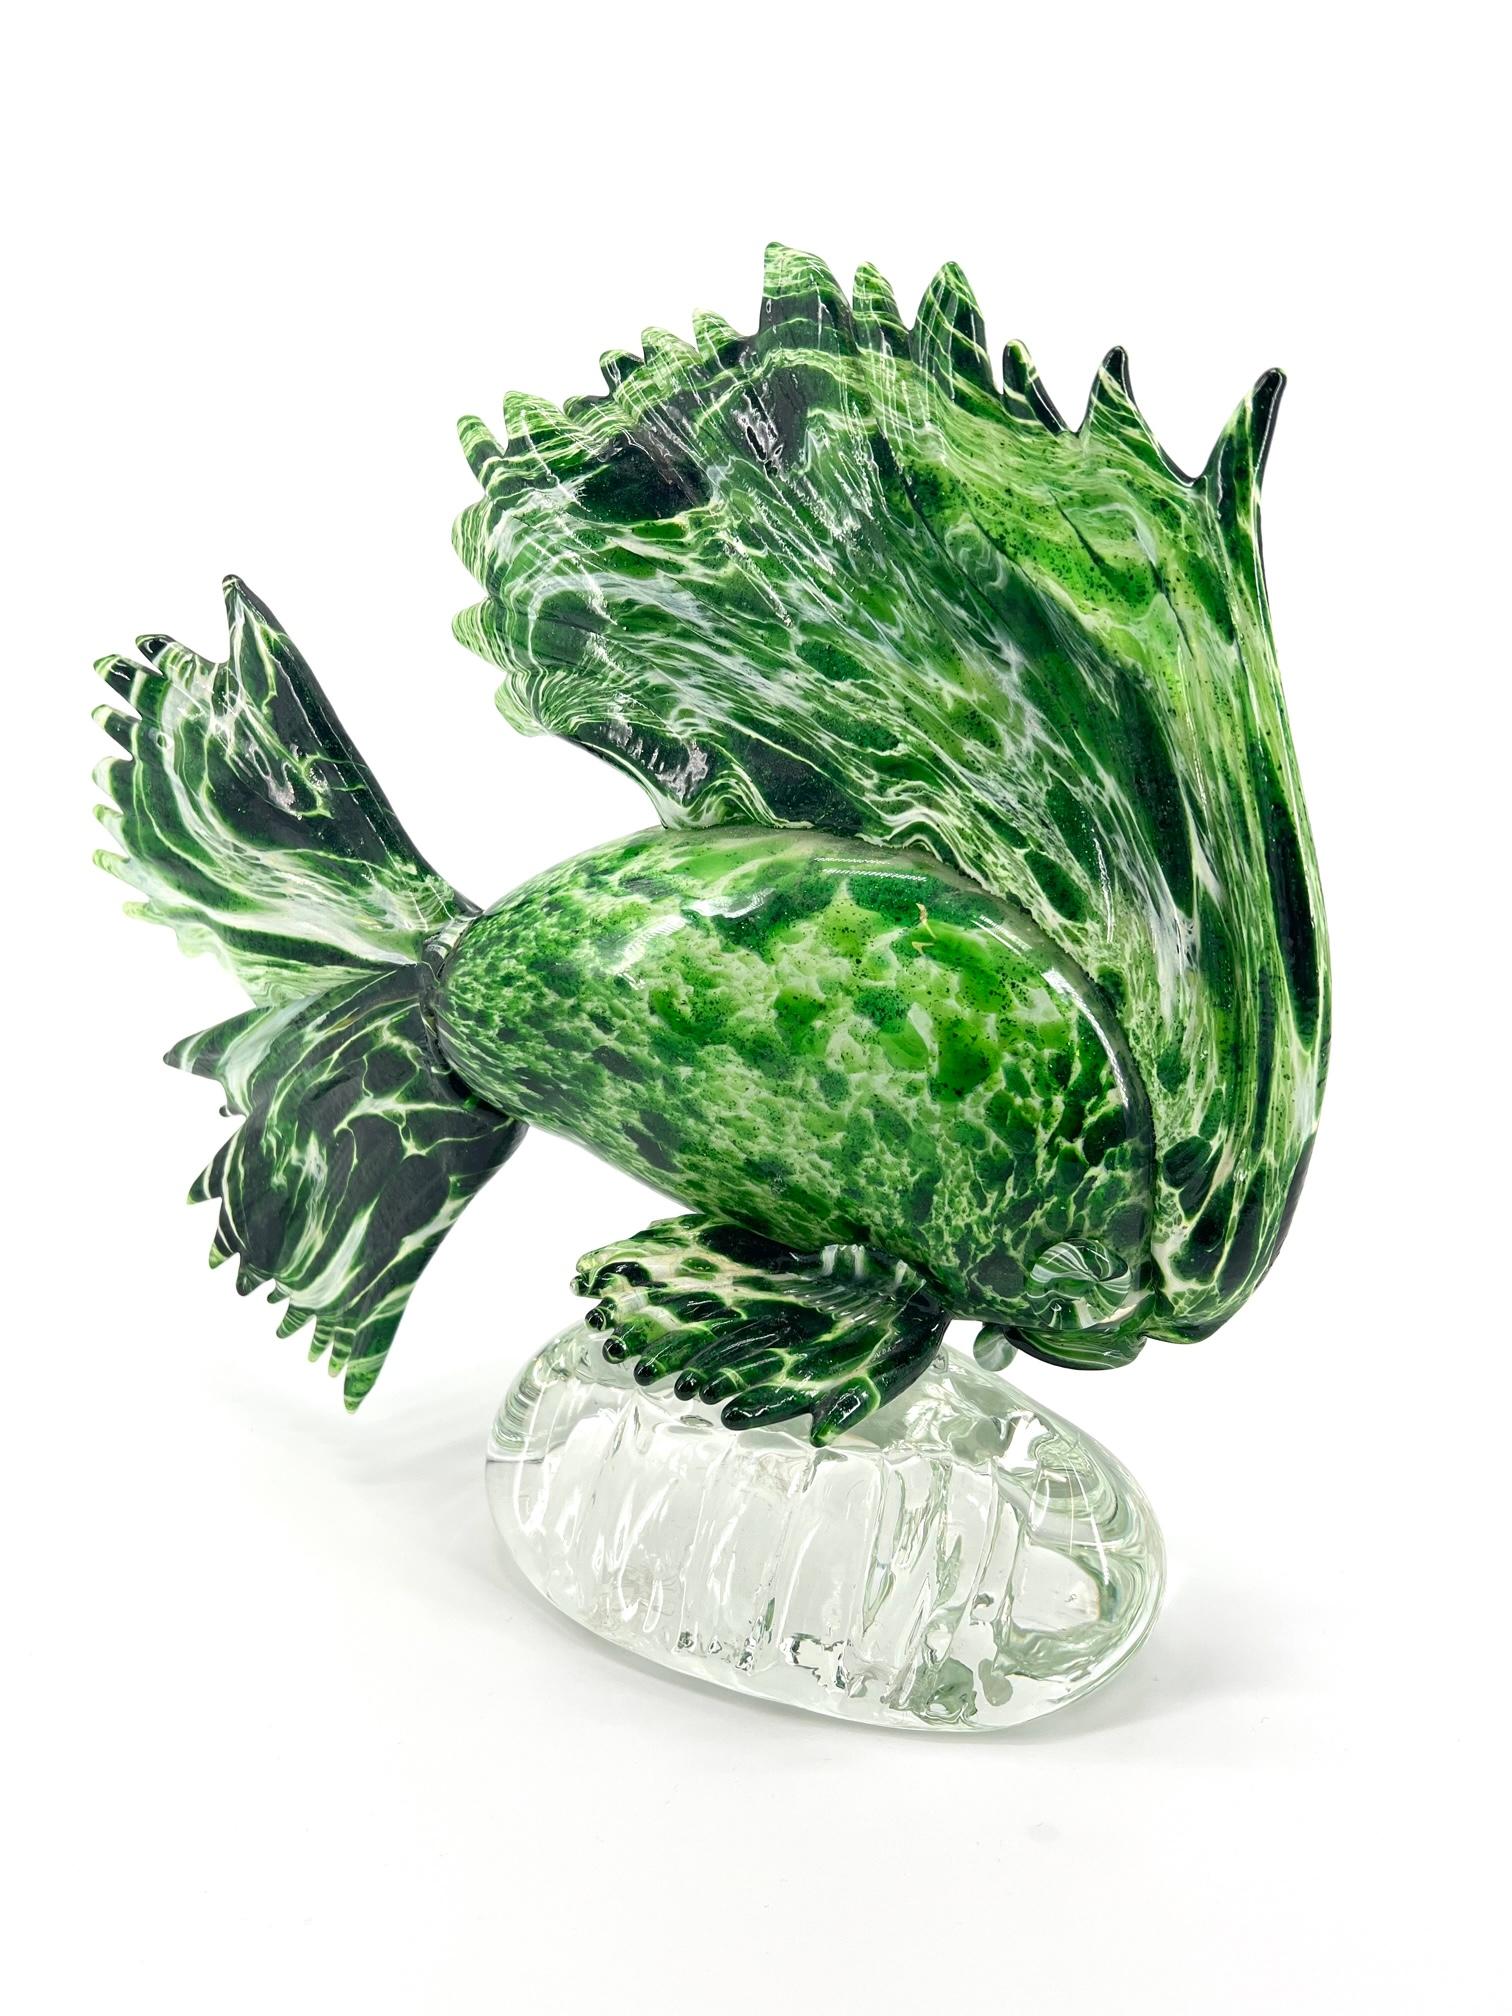 Italian 1295 Murano Glass Fish Sculpture Unique Piece Emerald Green